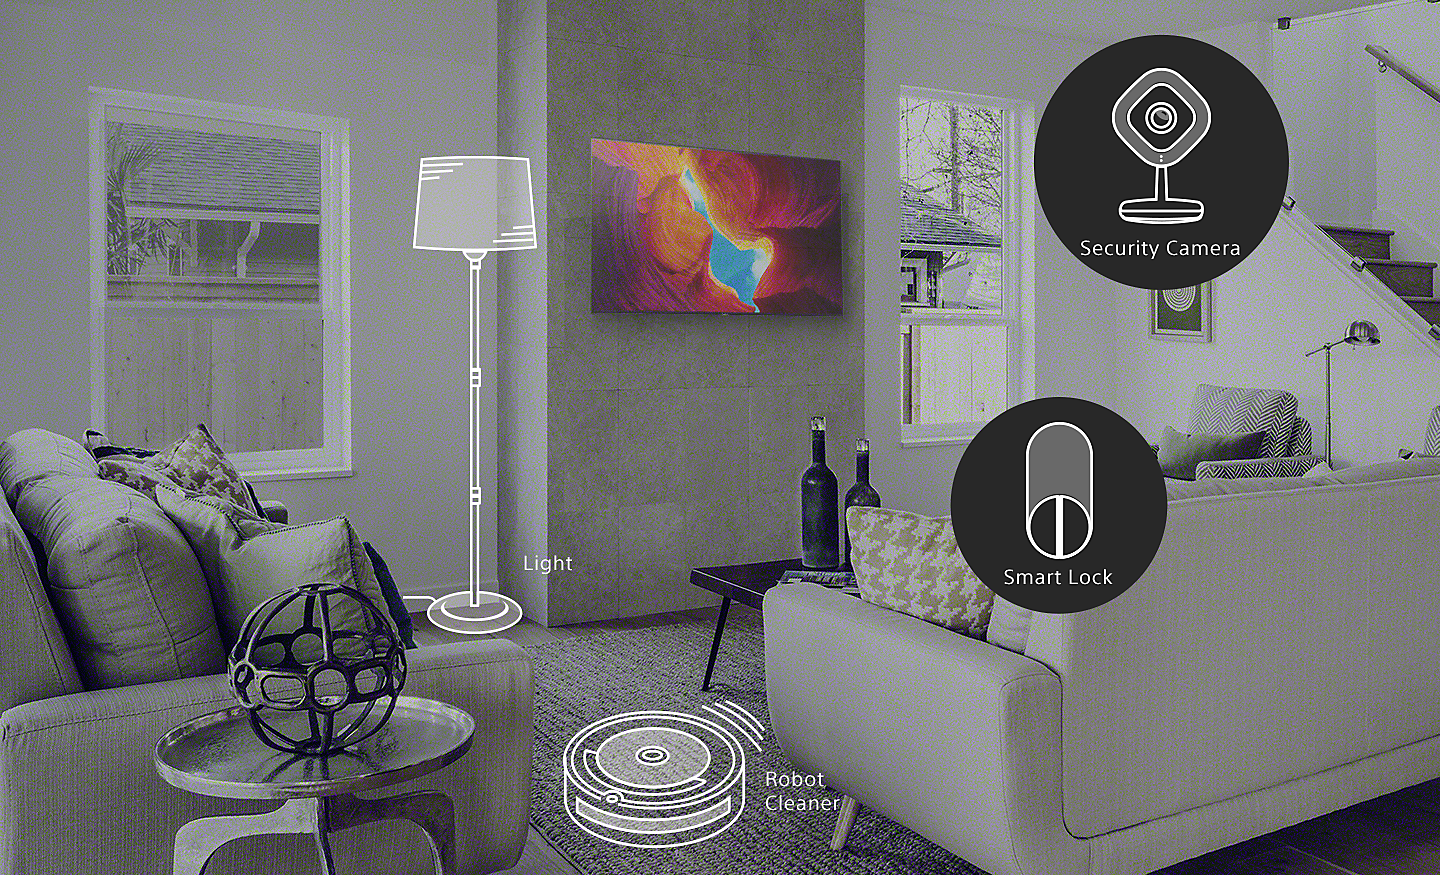 Sala con dispositivos de hogar inteligente como luces, robot aspirador, cámara de seguridad y cerradura inteligente